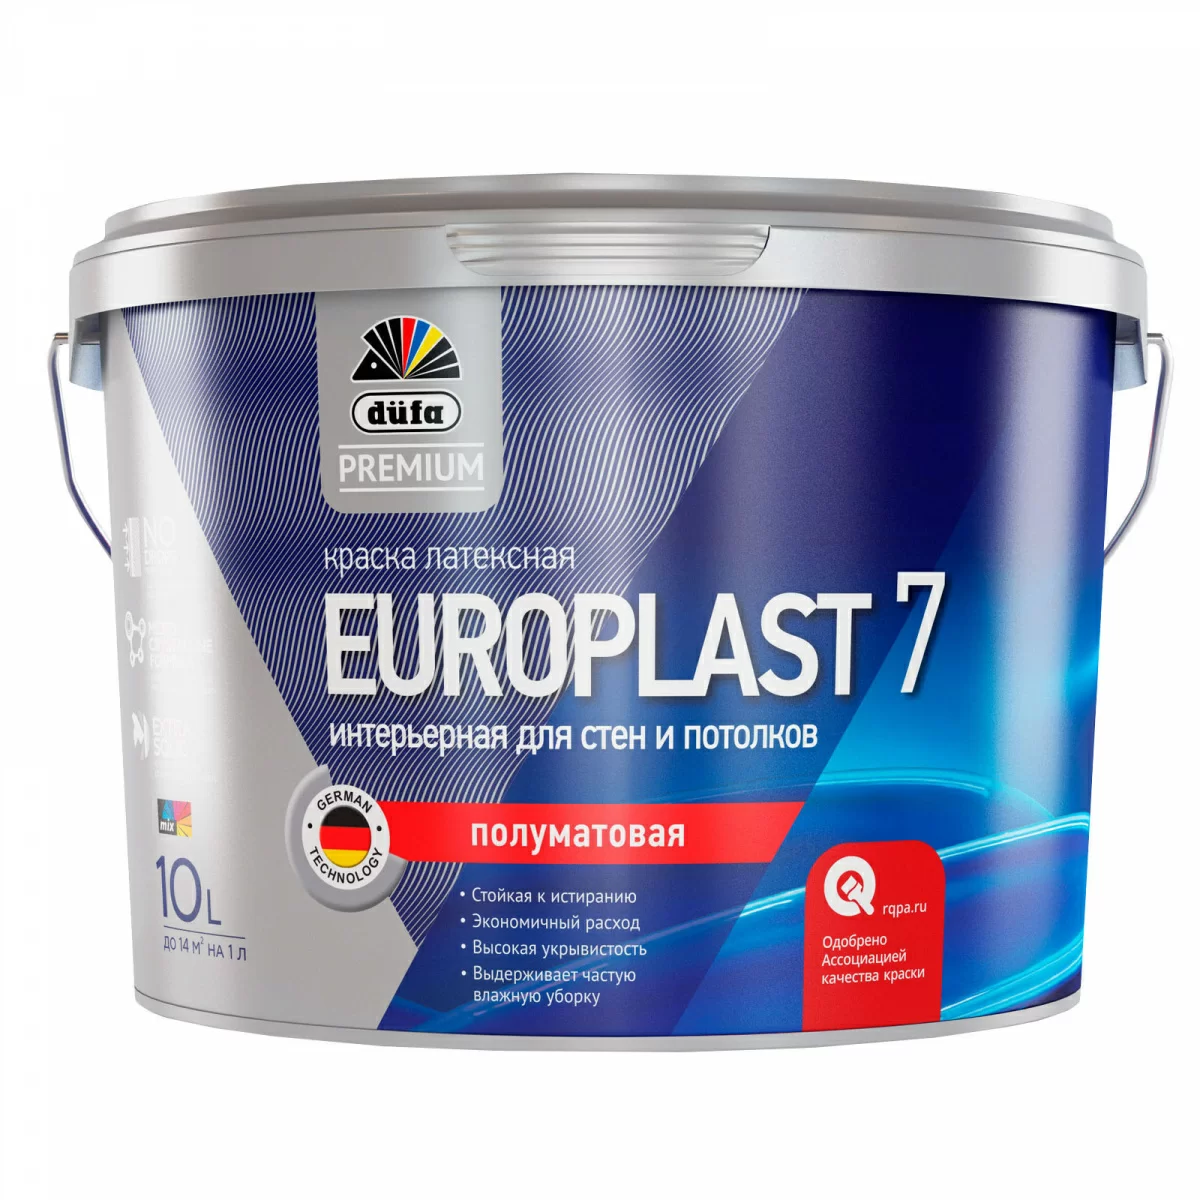 Краска водно-дисперсионная Düfa Premium EUROPLAST 7 2.5 л для стен и потолков полуматовая база1